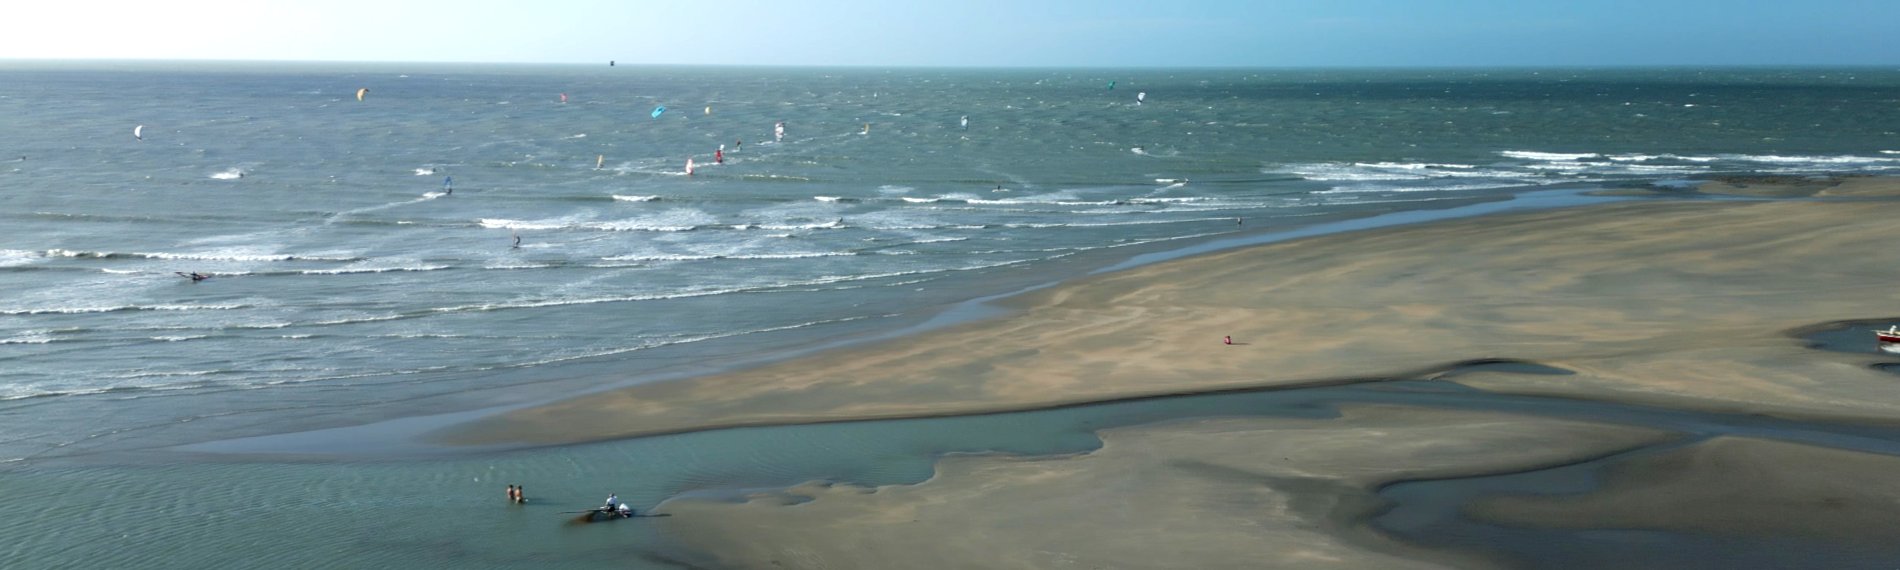 Luftaufnahme eines Strandes vor Maceio, Brasilien mit Windsurfern auf dem Meer.